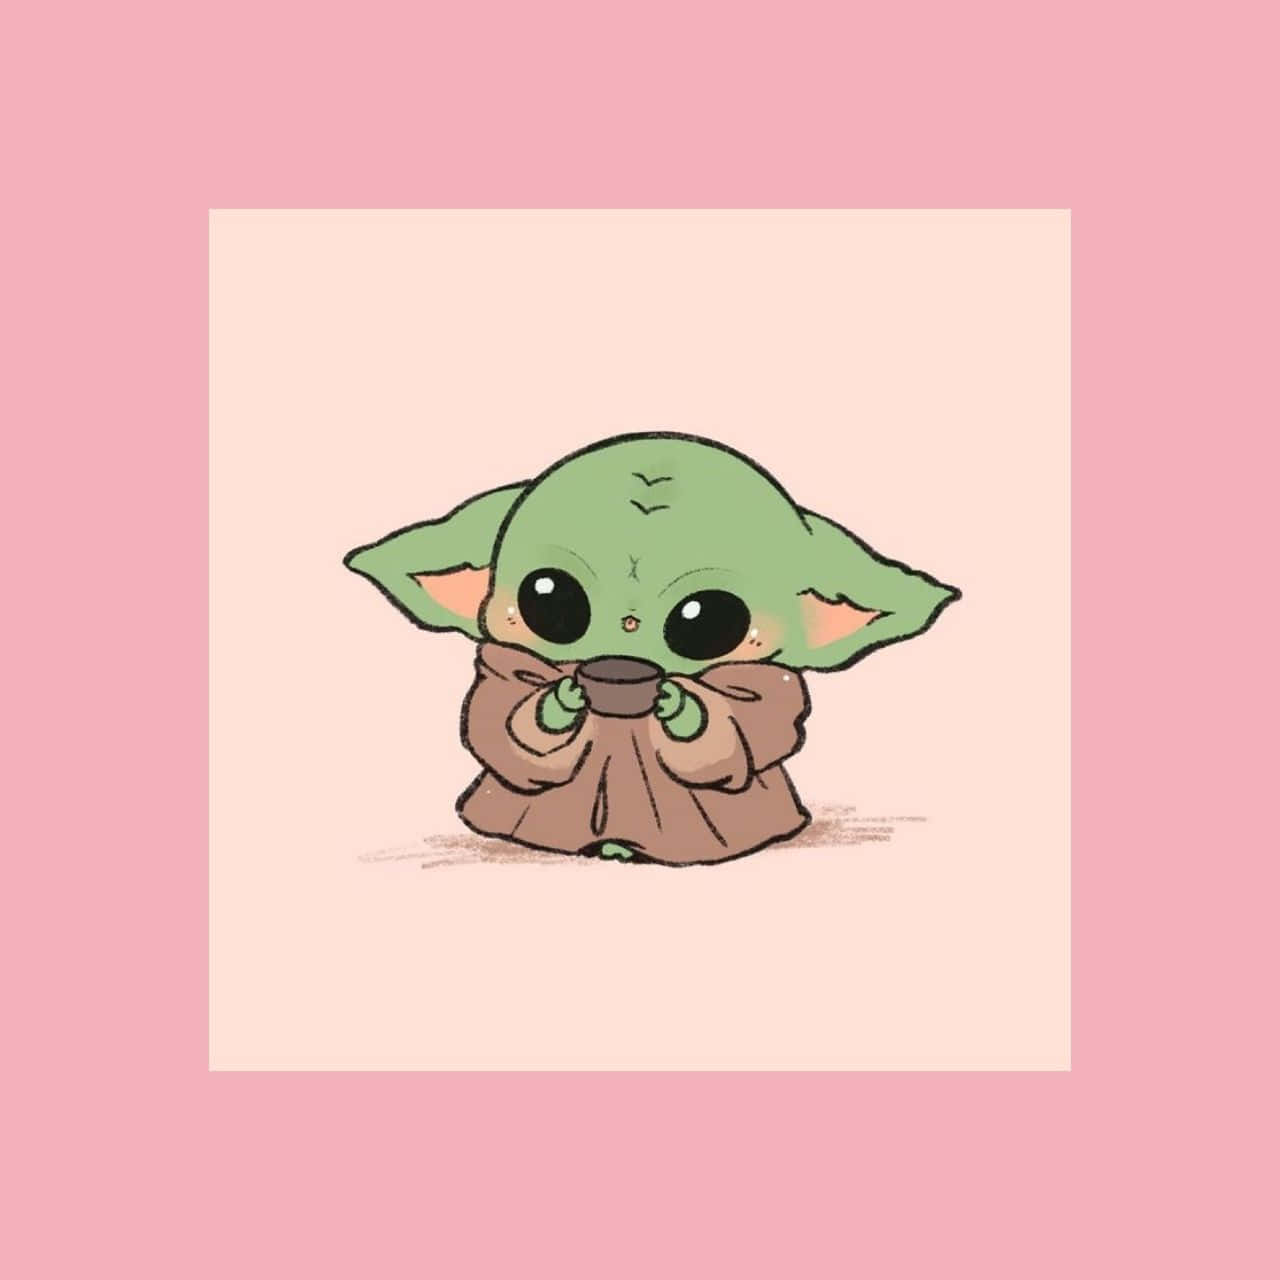 Sötestetisk Baby Yoda-ramsbild.